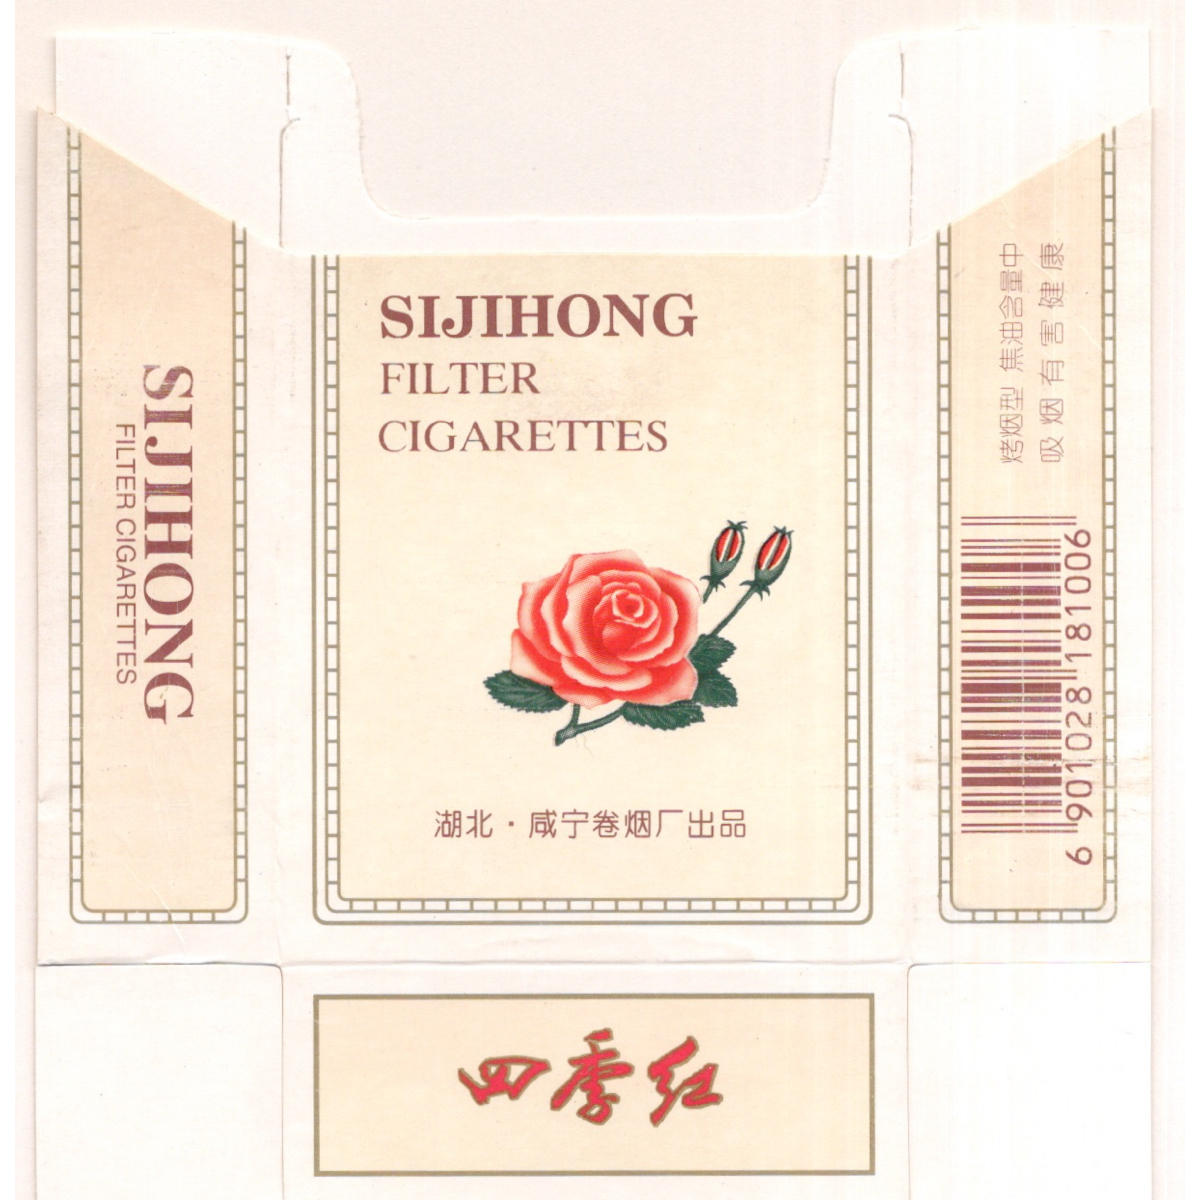 古い タバコ 煙草 ラベル パッケージ 中国 湖北 四季紅 SIJIHONG 台紙に貼り付け_画像2